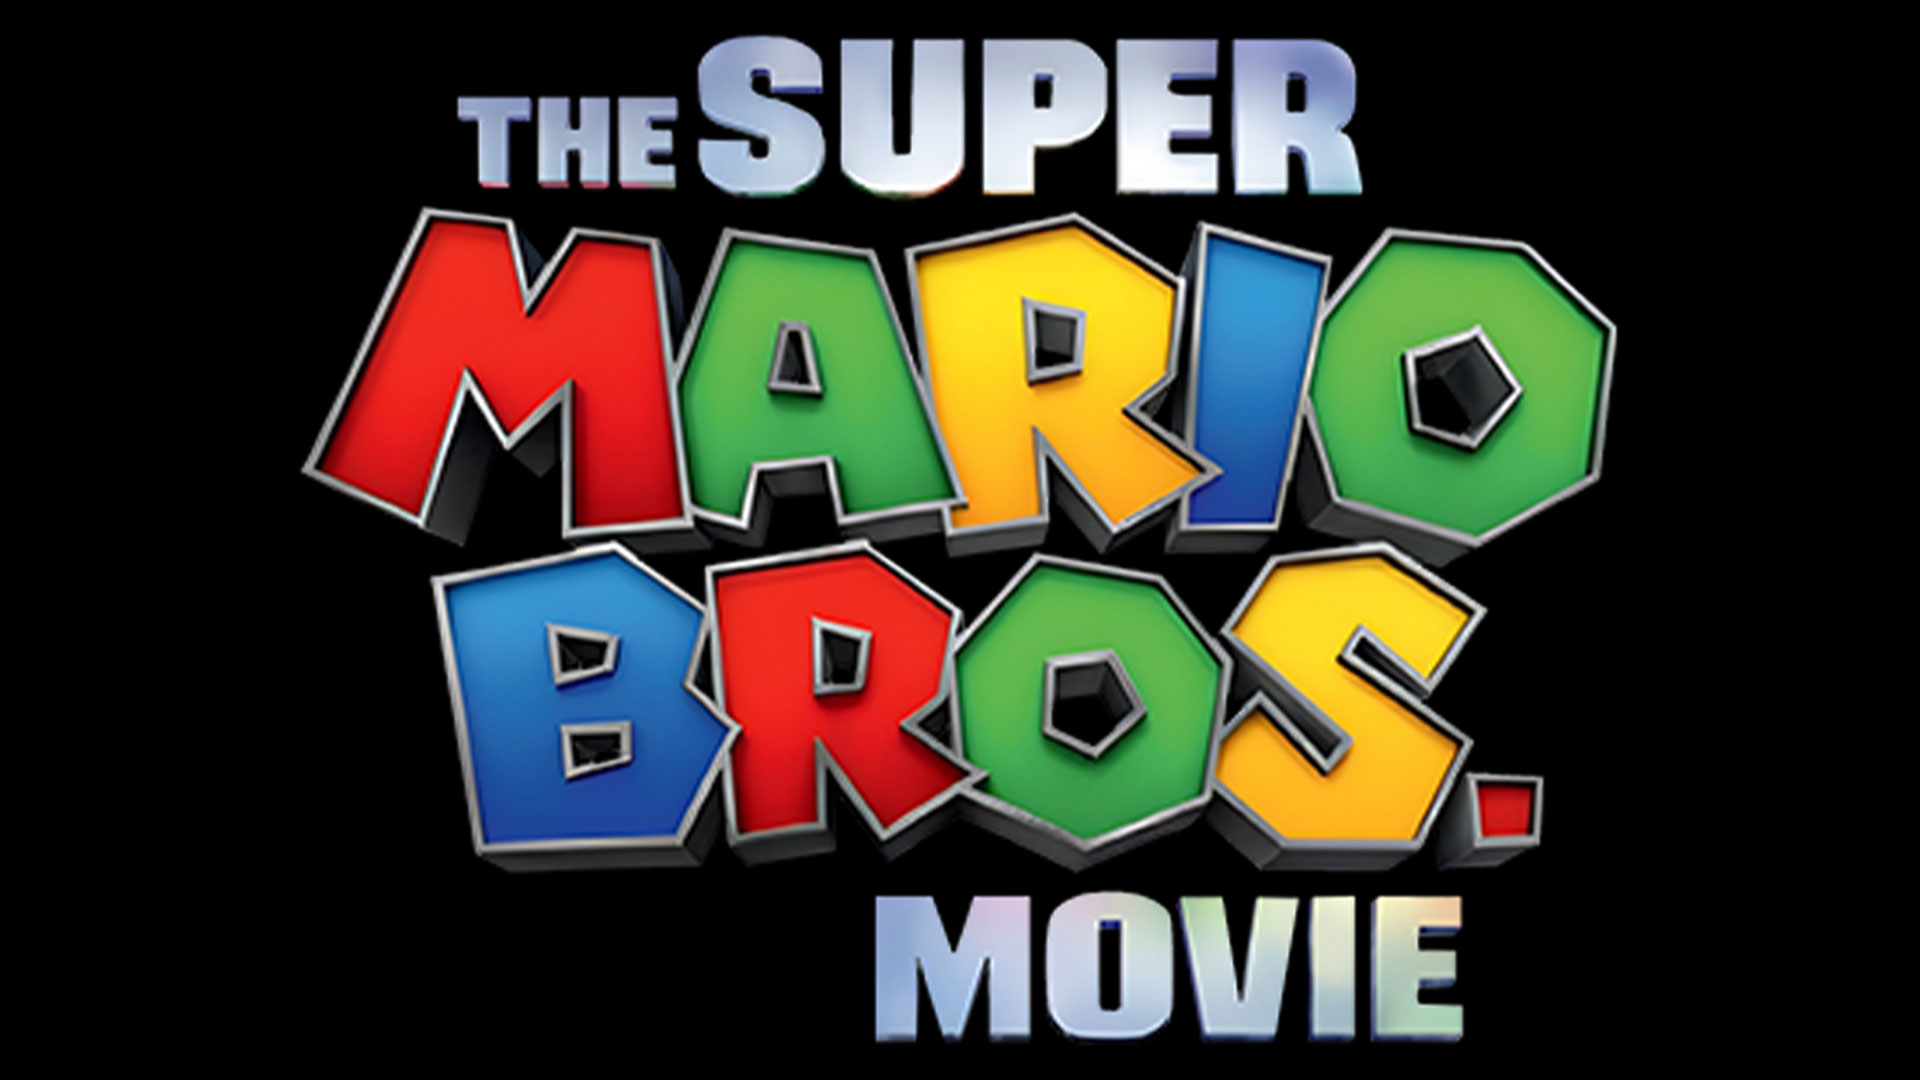 Super Mario Bros. Movie 2: Producer Addresses If Sequel Will Happen